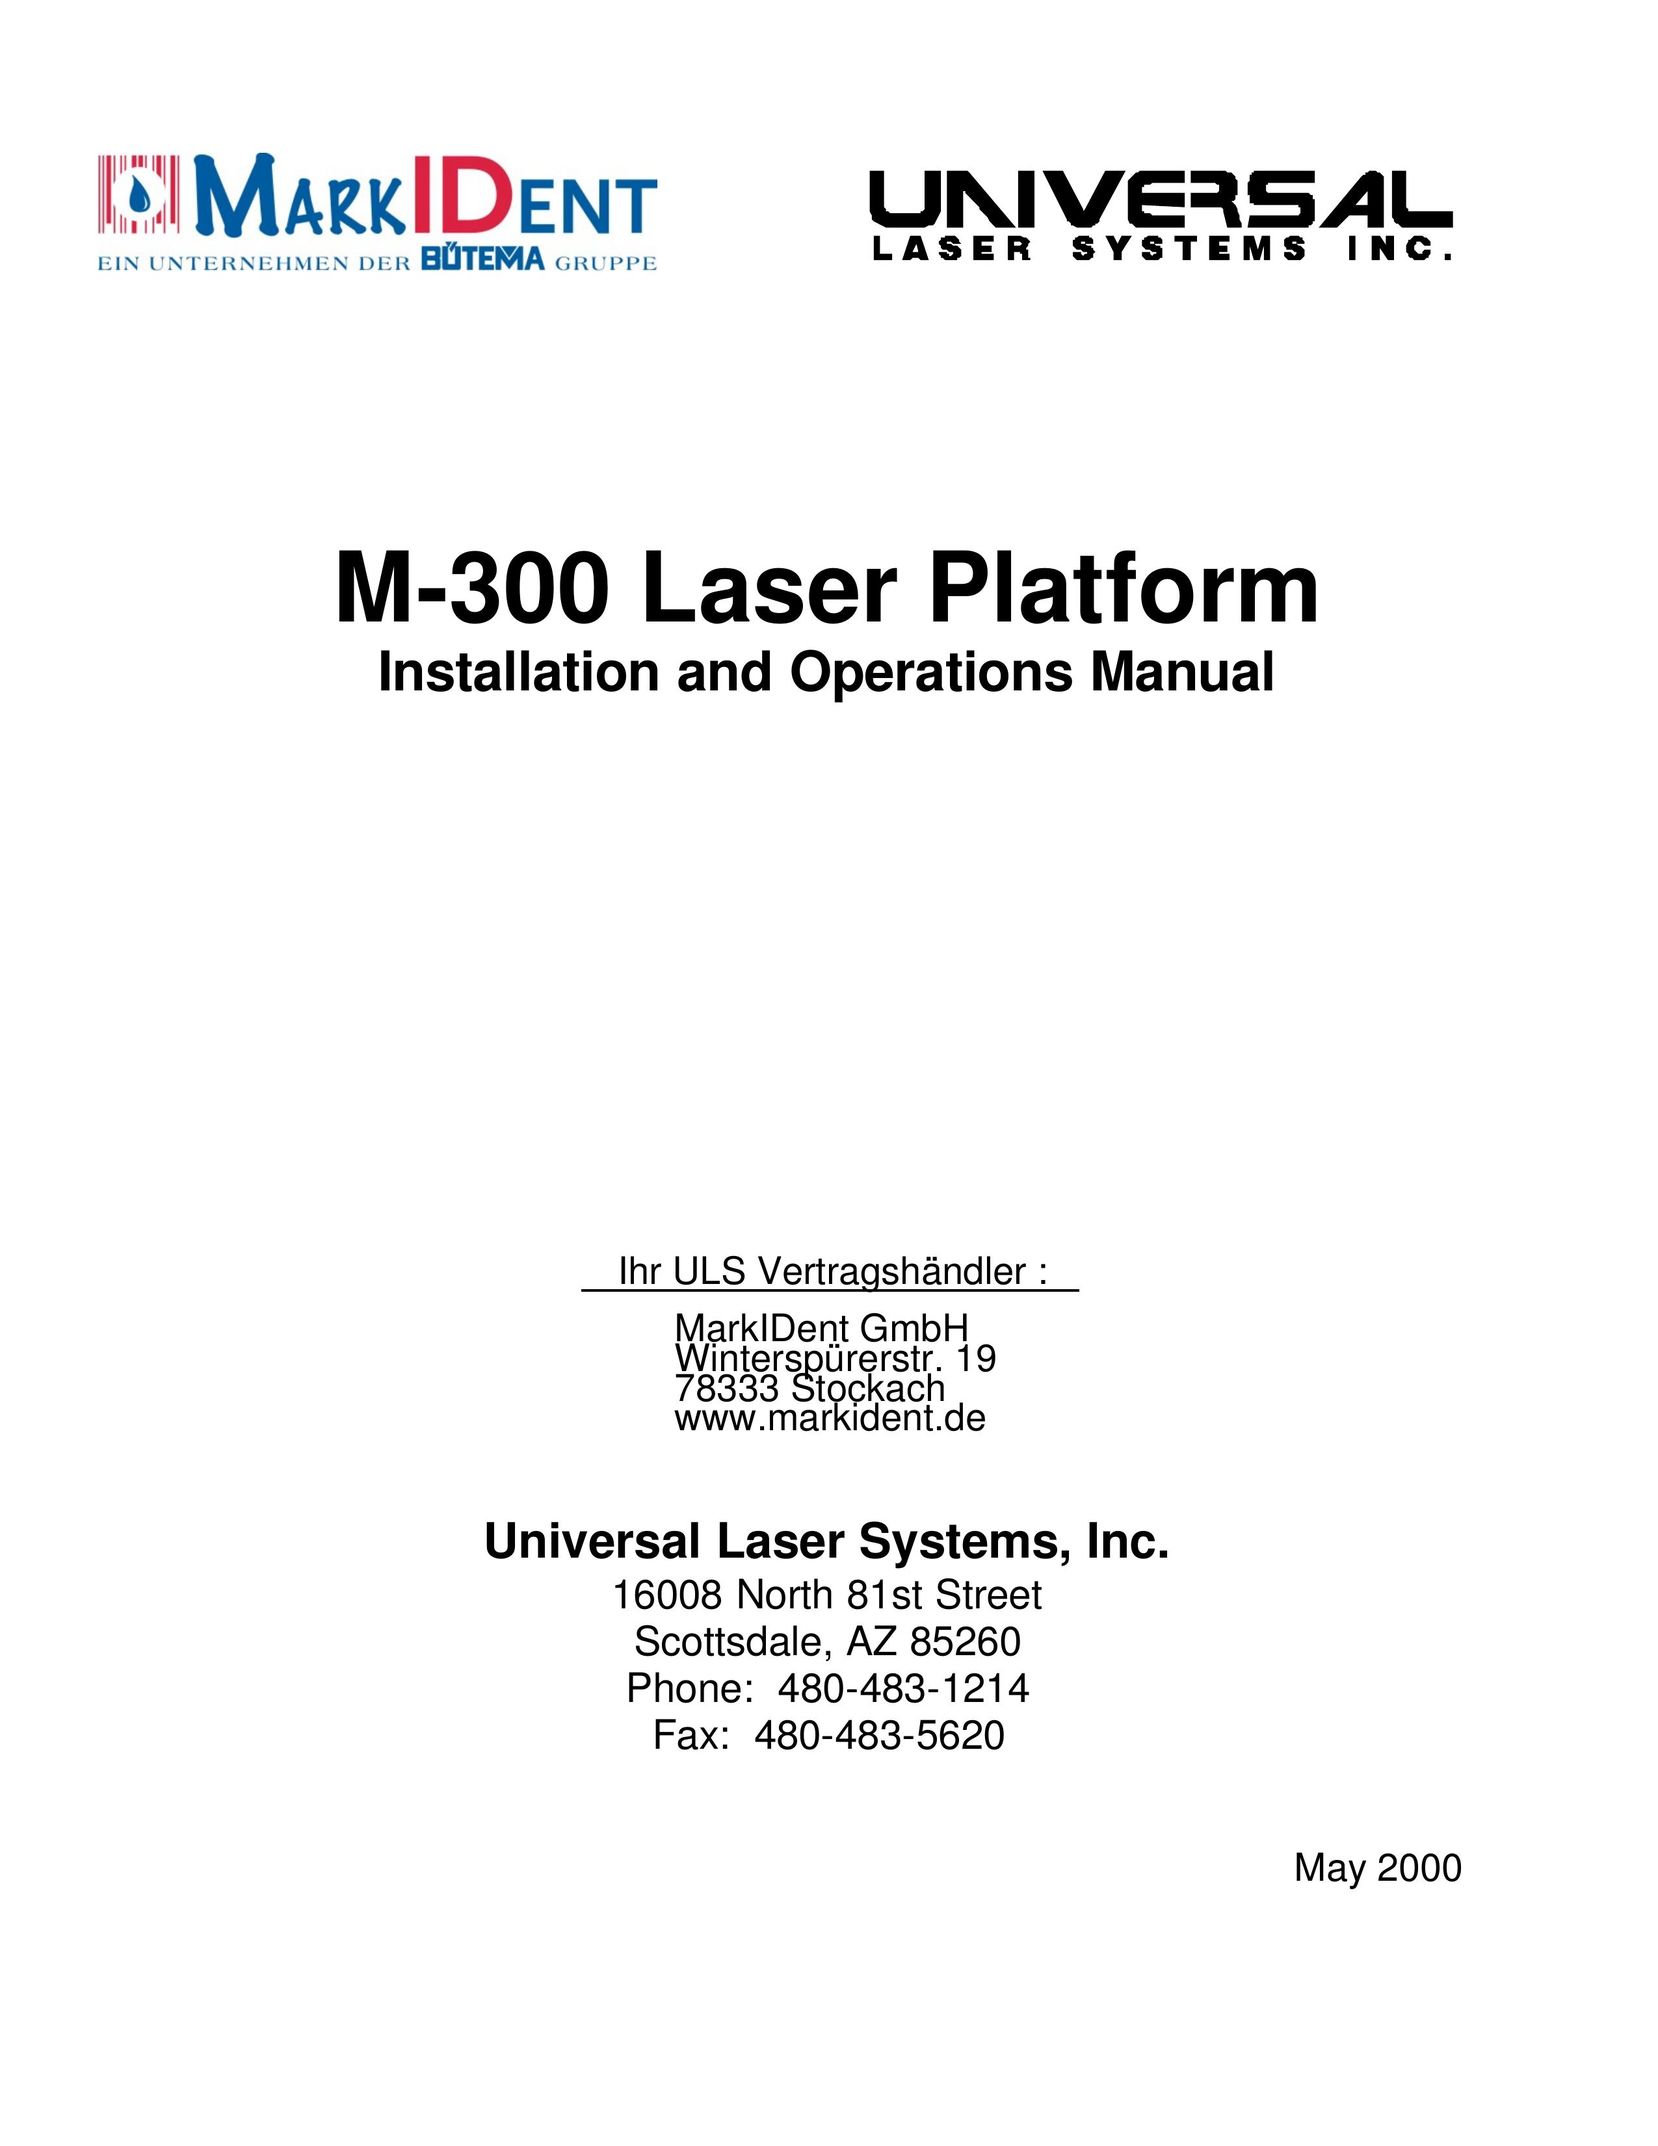 InFocus M-300 Laser Level User Manual